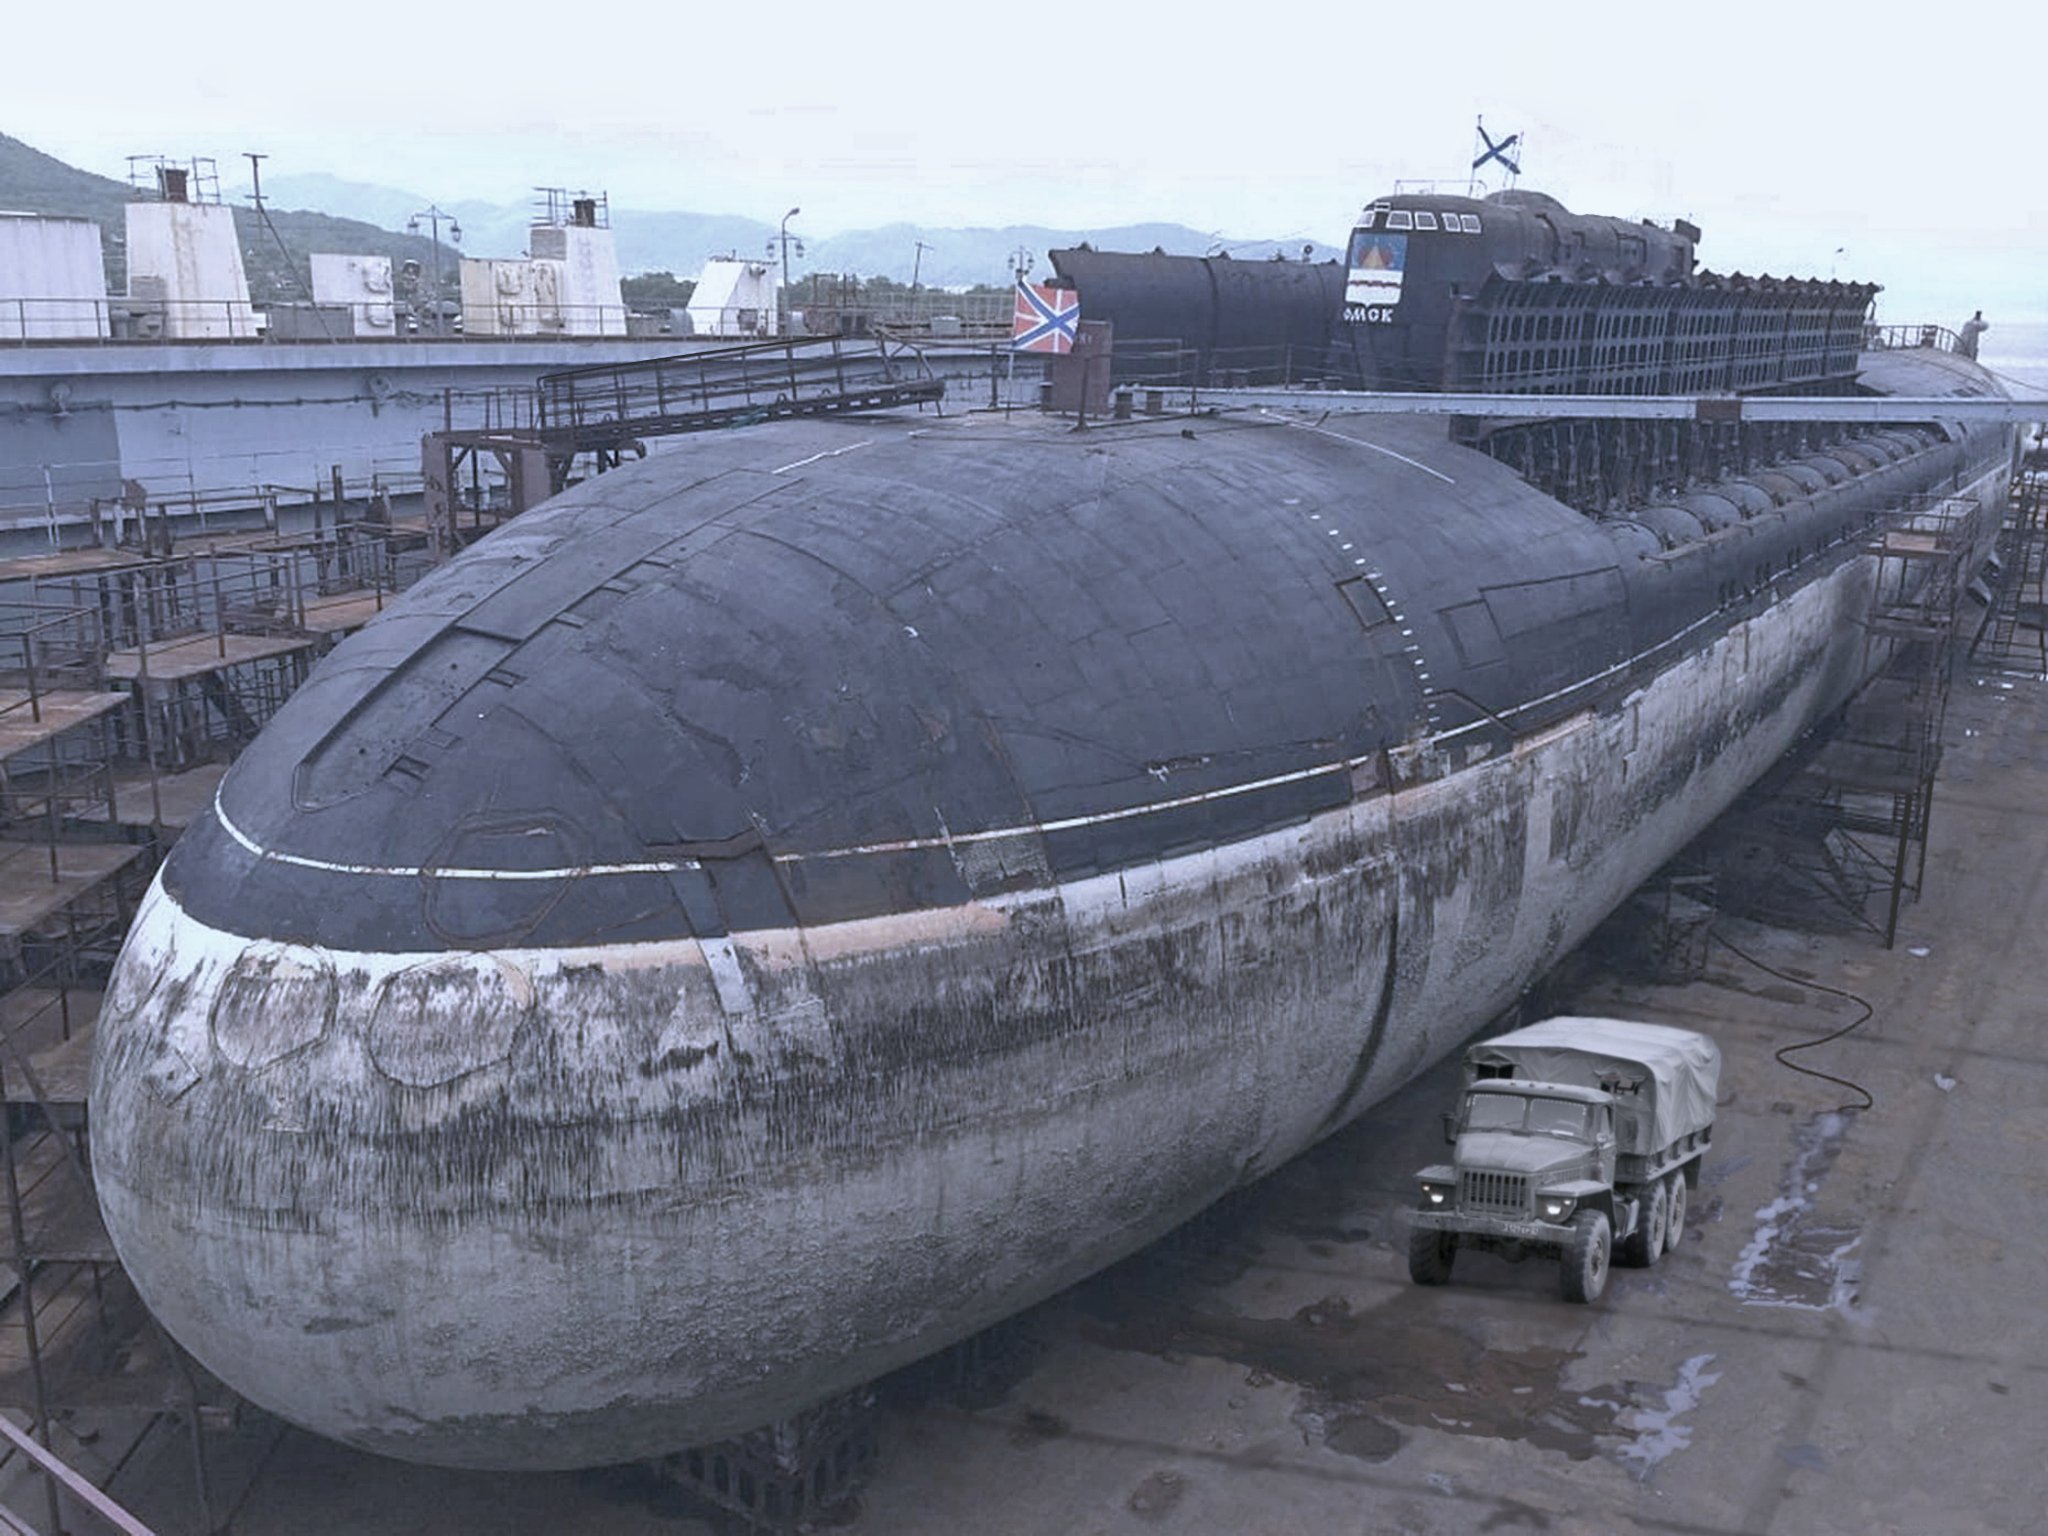 Курск после 11 класса. К-141 «Курск». Подводная лодка к-141 «Курск». Атомная подводная лодка Курск. АПРК К-141 Курск.